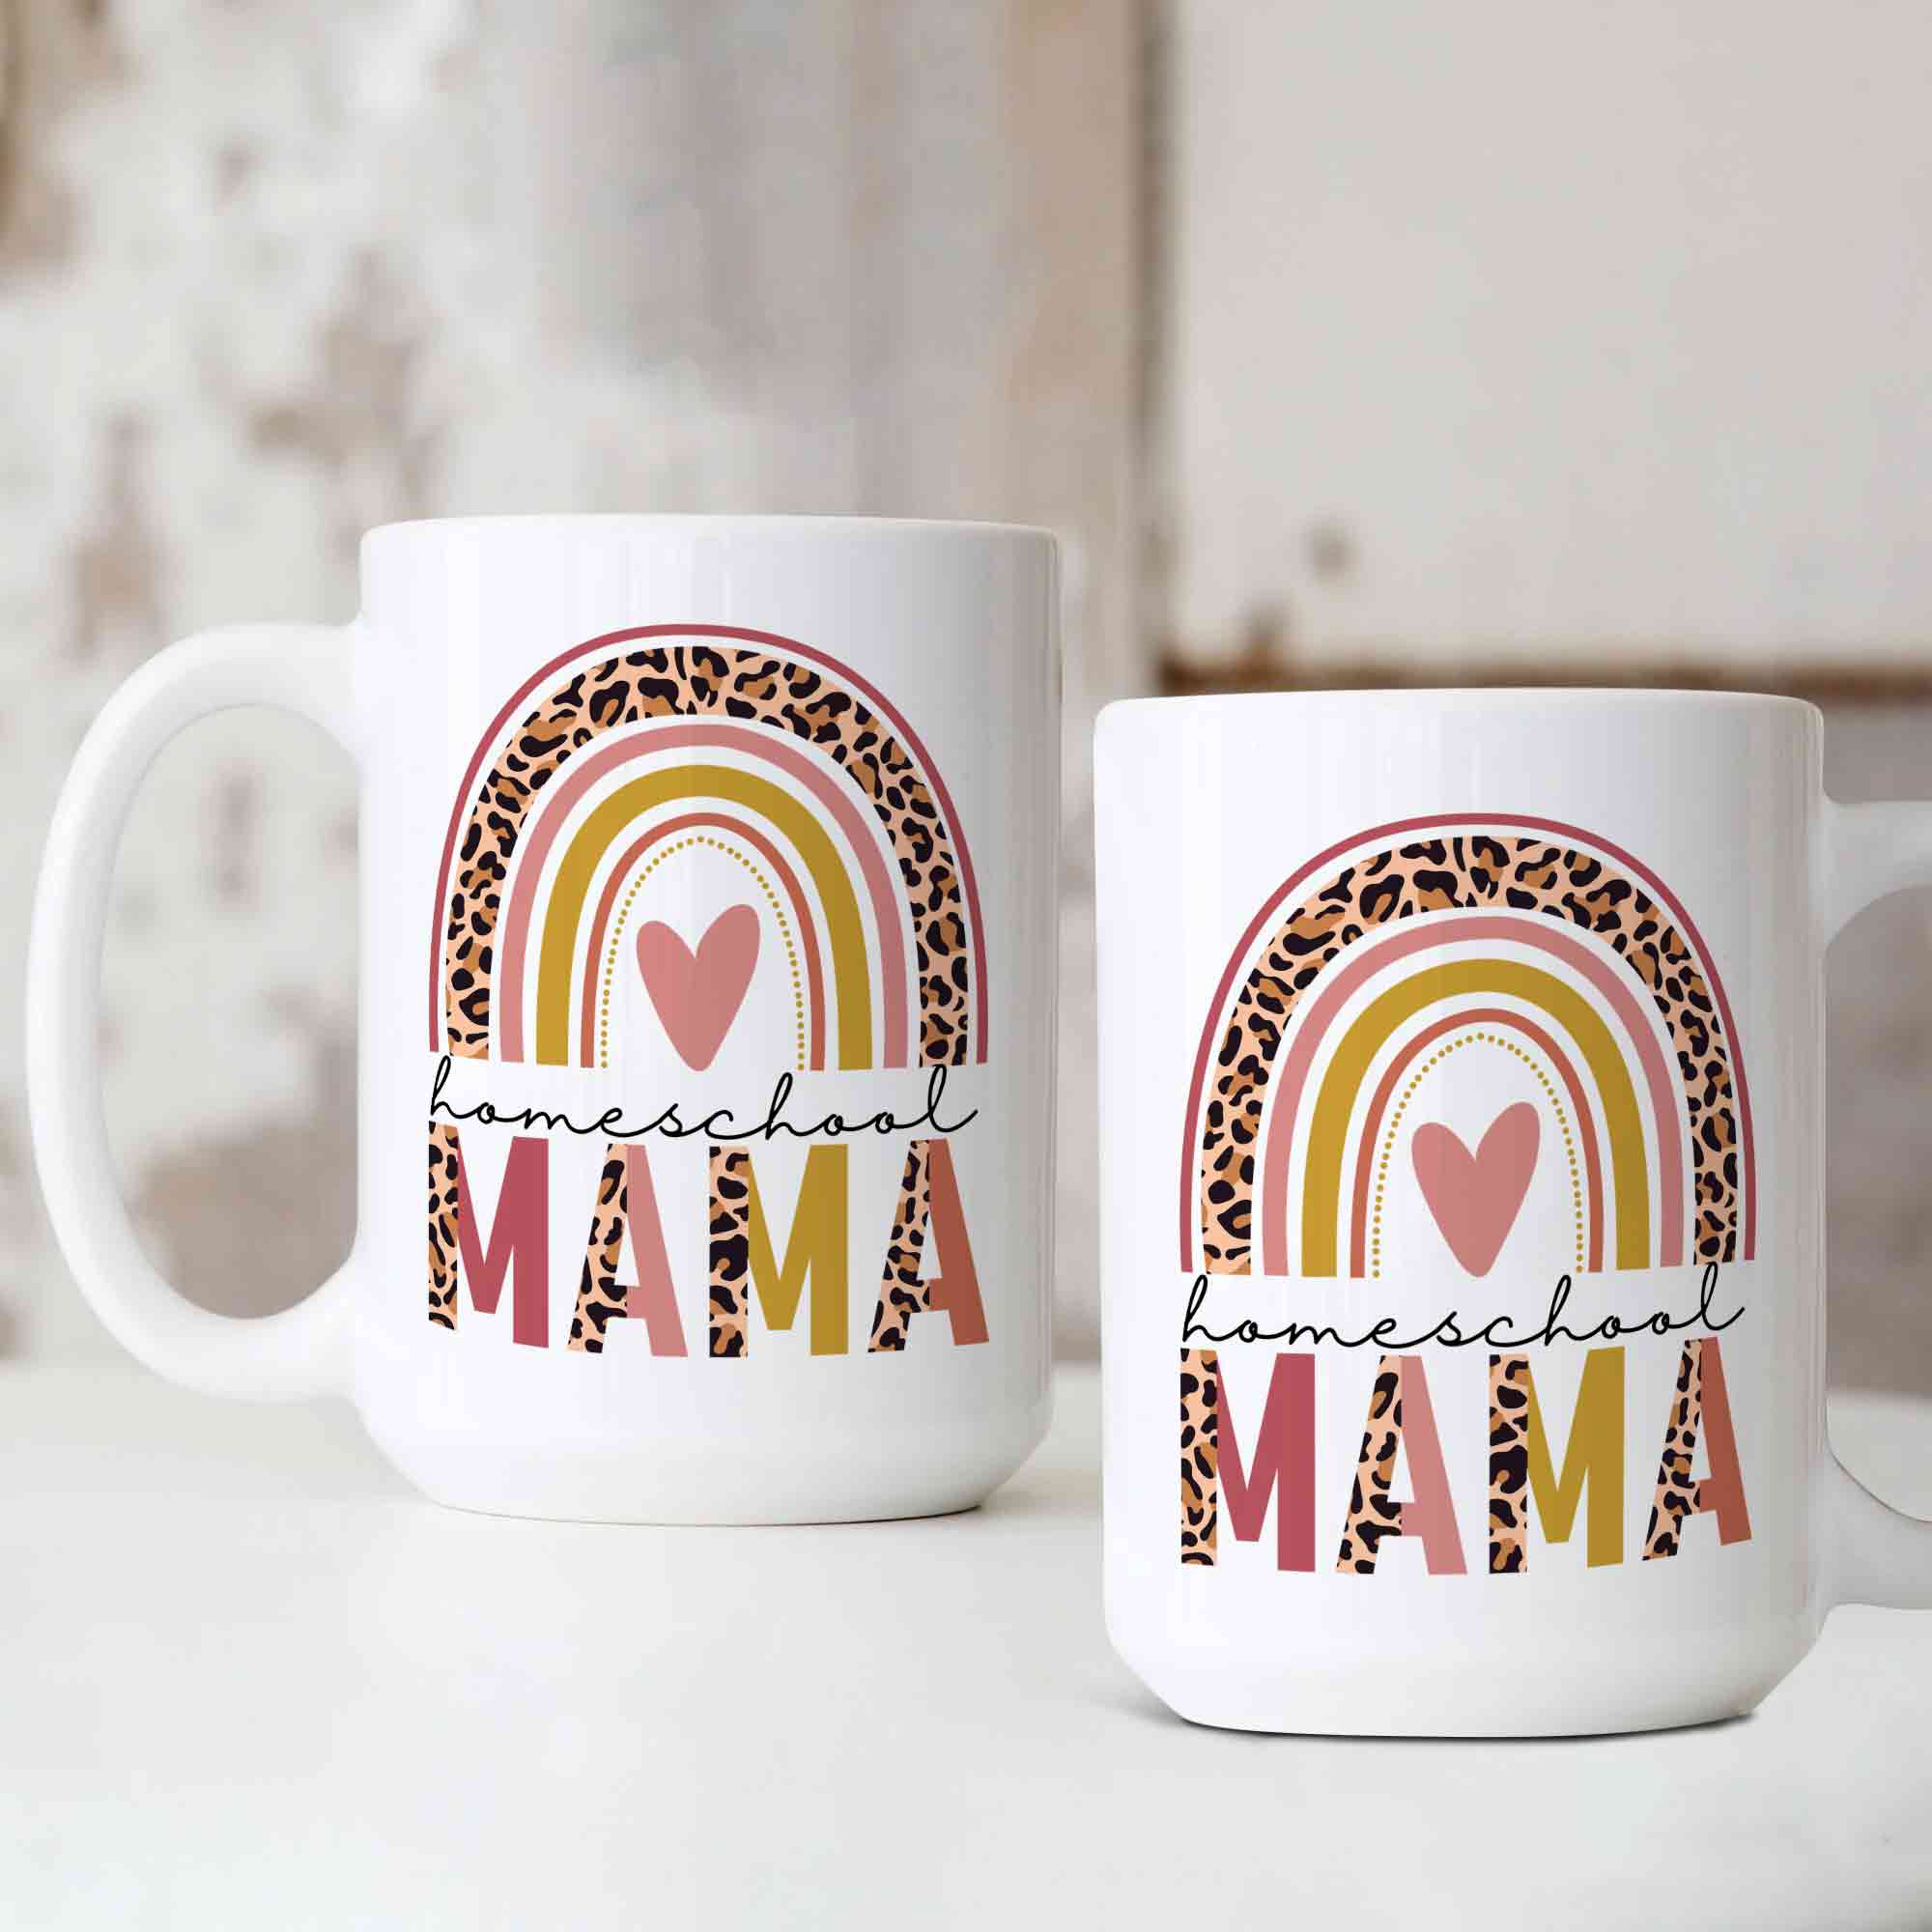 Homeschool Mama Mug, Custom Homeschool Mom Mug, Mom Mugs, Mothers Day Gifts, Rainbow Mug, Gift for Homeschool Mom, Homeschool Teacher Gift